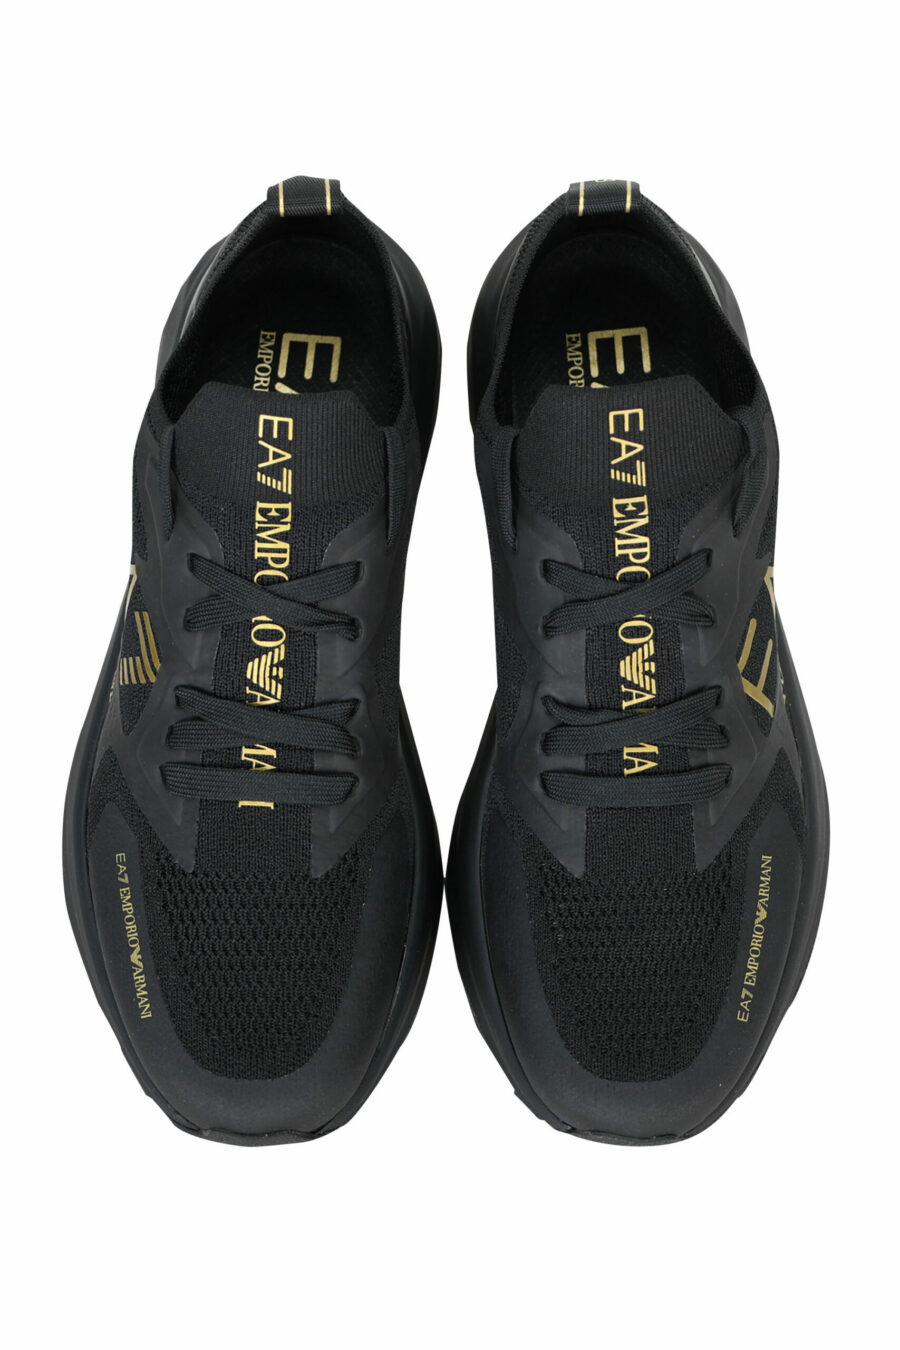 Zapatillas negras con maxilogo "lux identity" dorado y suela negra - 8059515428016 4 scaled